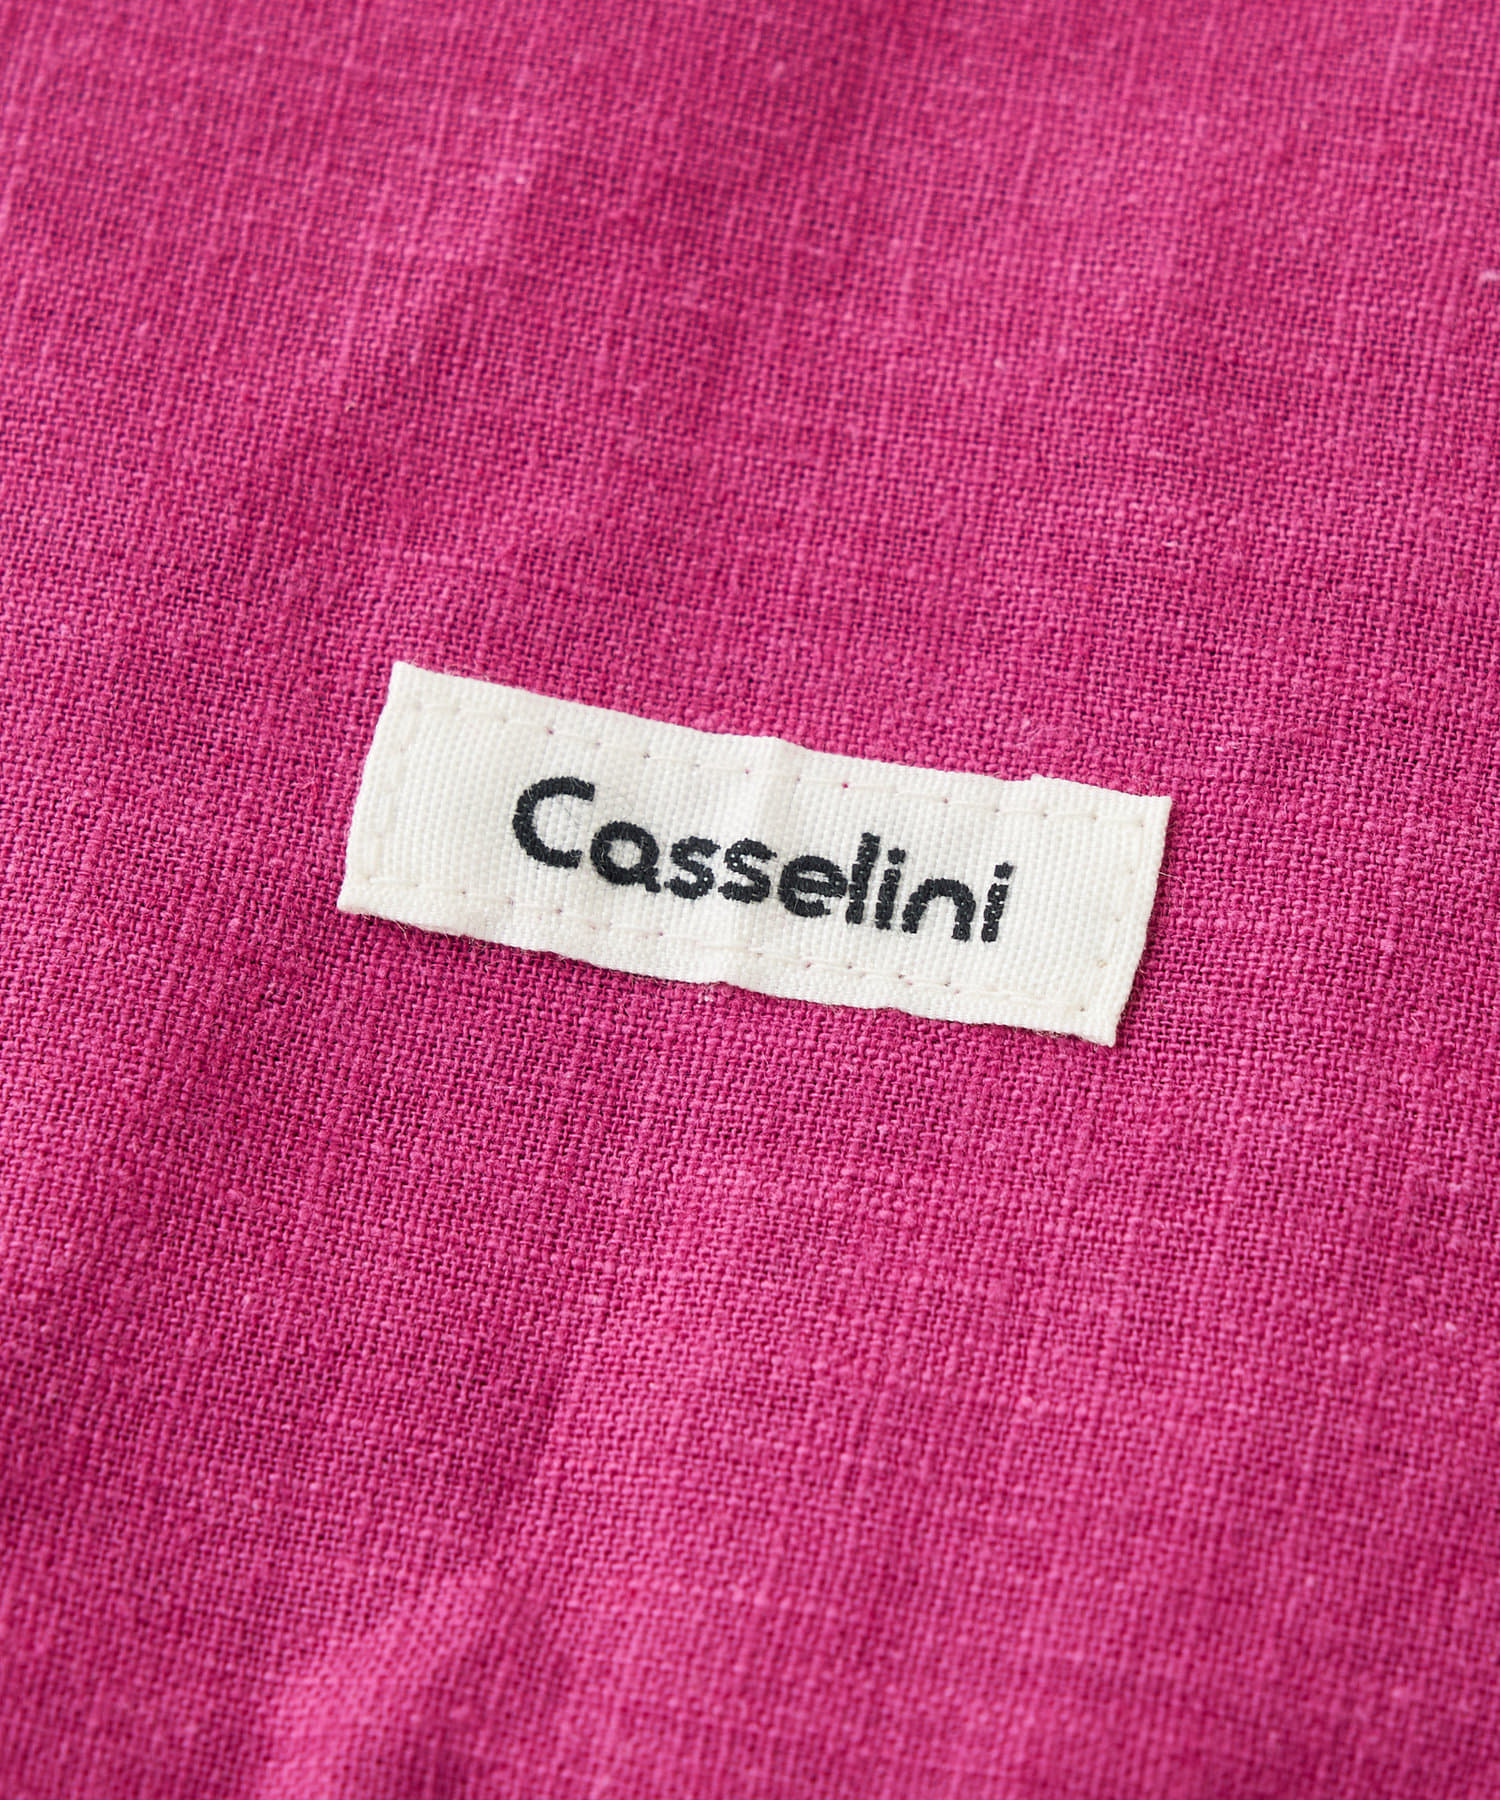 Casselini/キャセリーニ】刺繍クッションカバー | Discoat(ディスコート)ライフスタイル | PAL CLOSET(パルクローゼット)  - パルグループ公式ファッション通販サイト